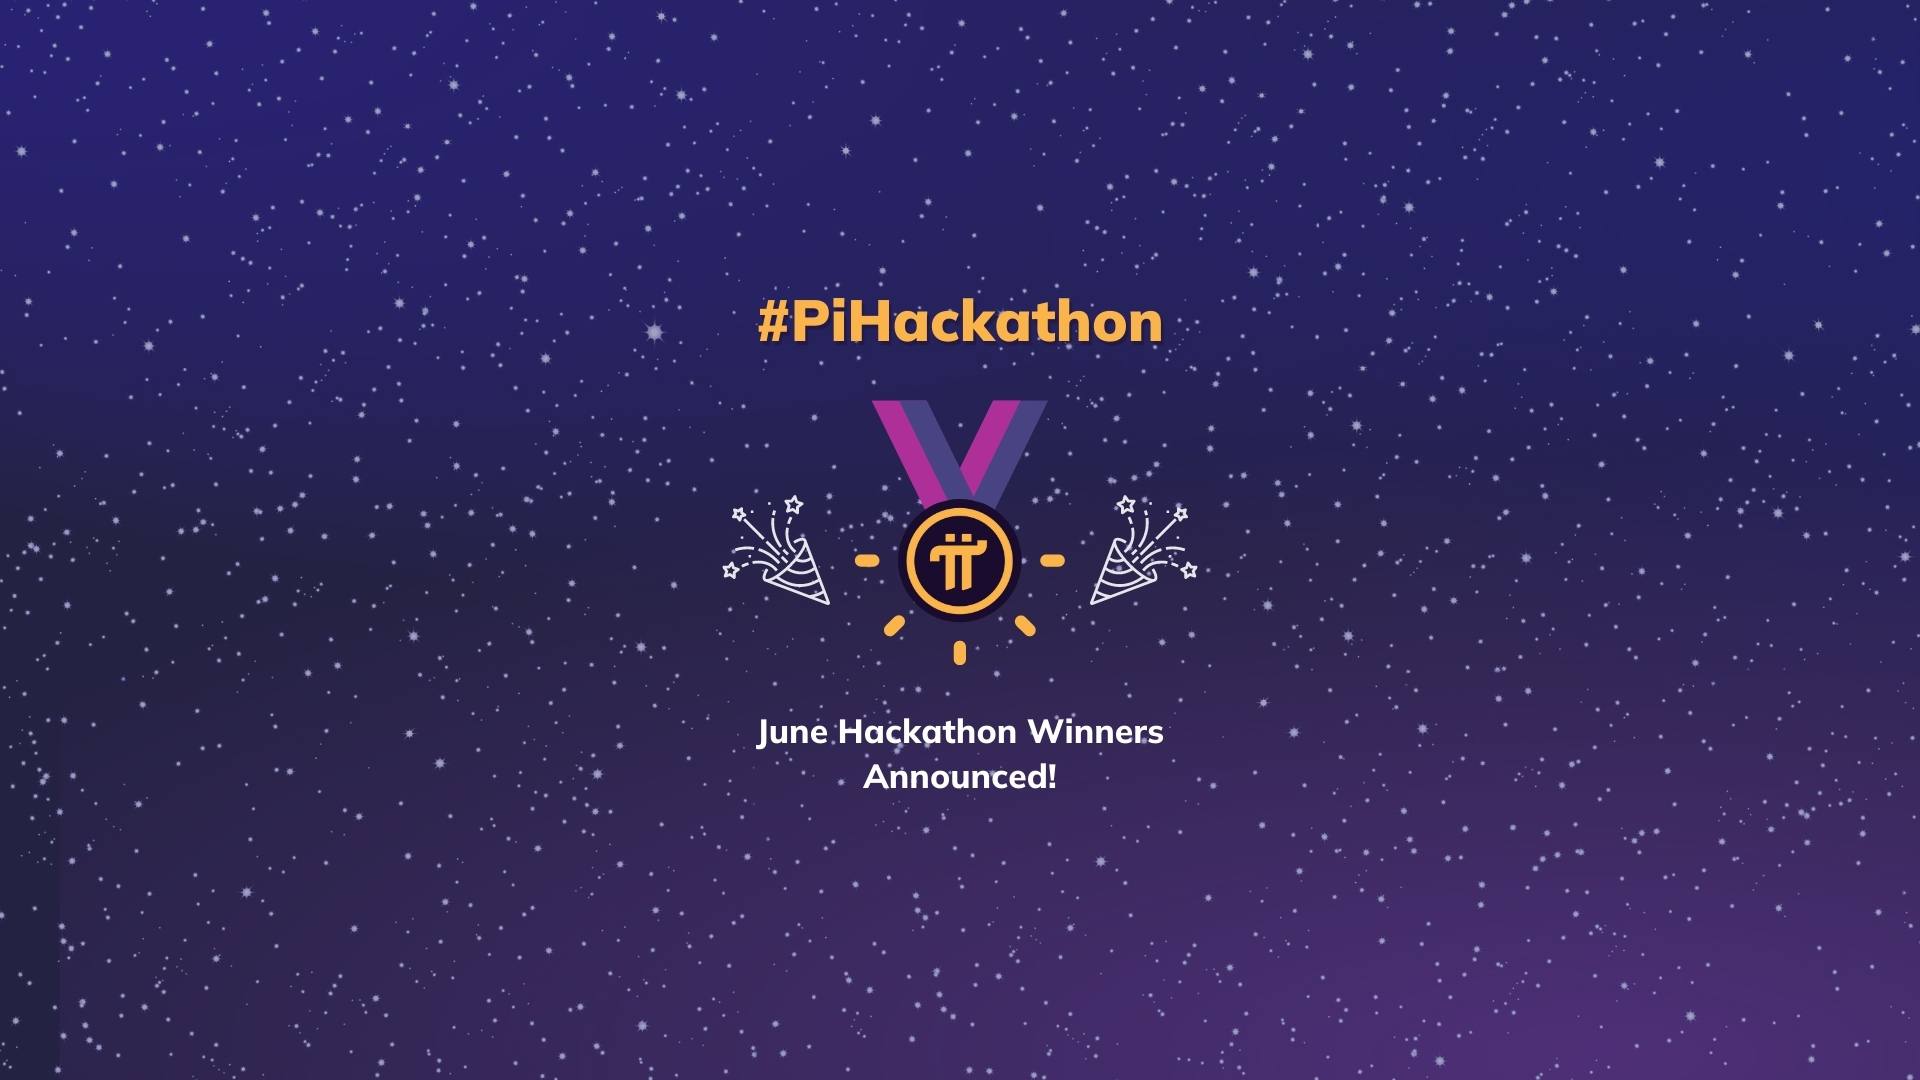 Announcing the June #PiHackathon Winner: TanTan for Pi!